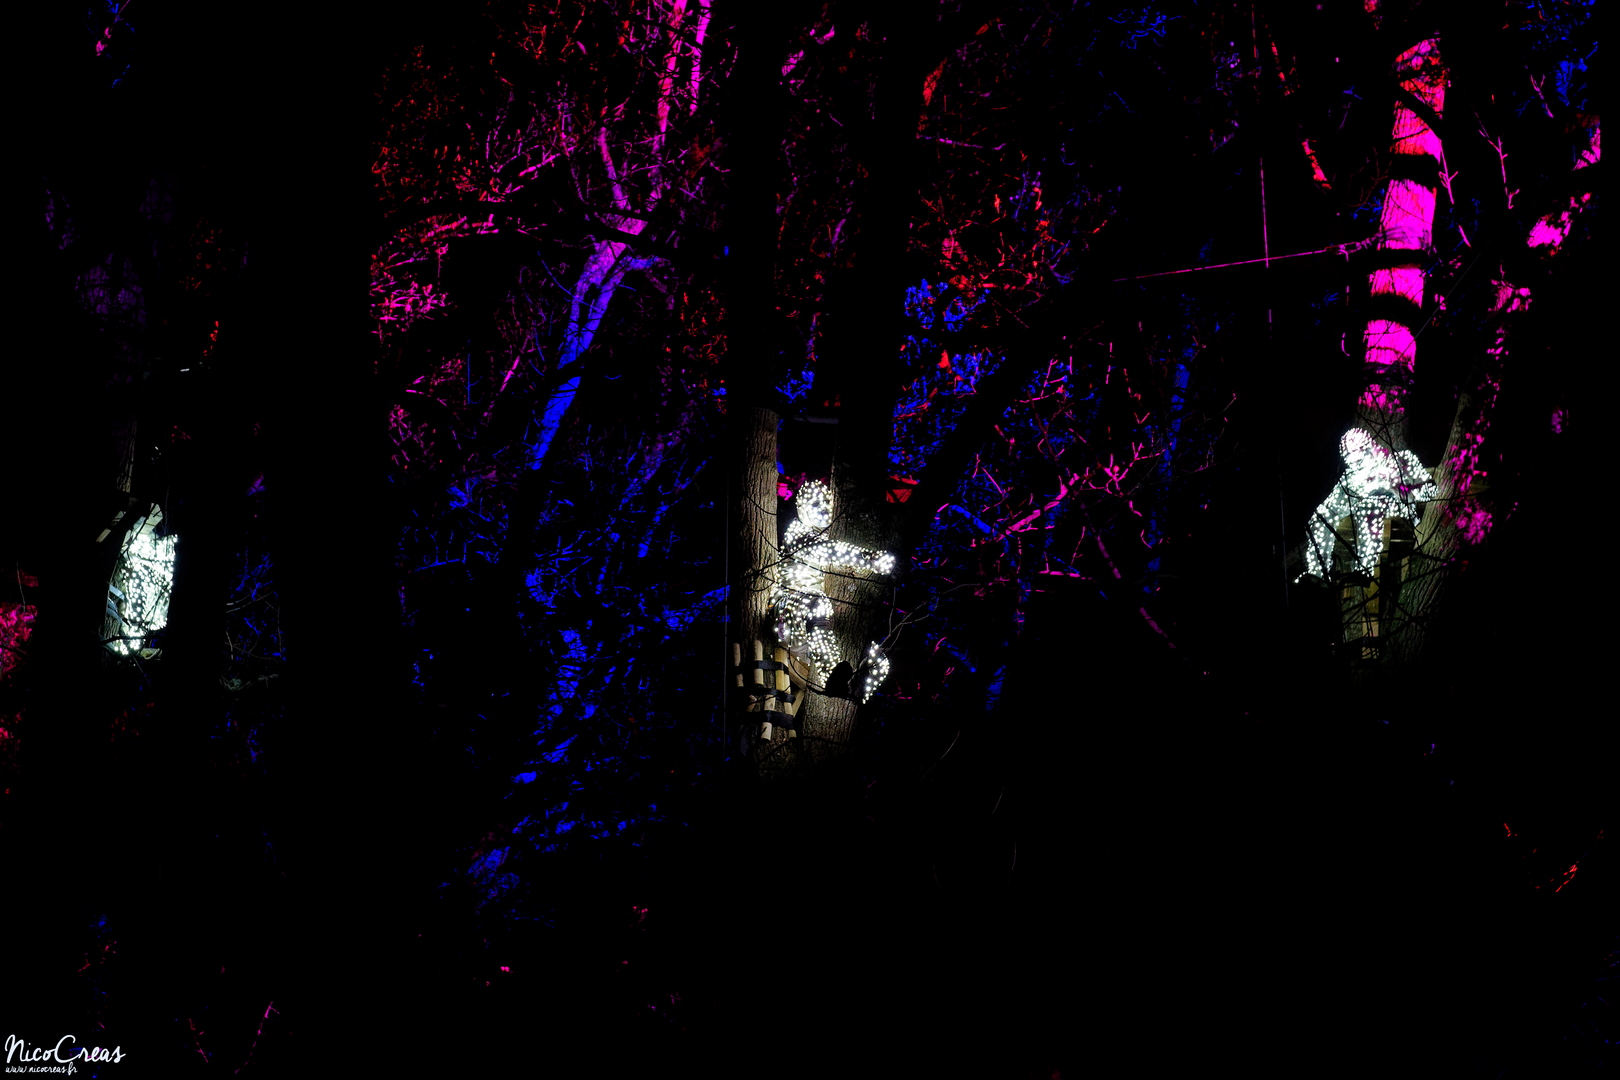 Parc de la Tête d'Or, Lyon 6

---

Les artistes : Groupe F - Christophe Berthonneau
Production : Groupe F

---

« Des primates de lumières, essence de notre humanité, évoluent dans les arbres. Ces êtres d’une autre ère observent, sur une musique de Scott Gibbons, la richesse de notre biodiversité projetée sur des totems lumineux. Sur la pelouse, tel un chapelet lumineux, les structures s’égrènent pour finir leur course dans le lac. Sur les eaux lacustres, une planète bleue se reflète avant de s’enflammer. Alors que le feu se propage, des flammes jaillissent du sol et font disparaitre la forêt lumineuse et le peuple de lumière avant qu’ils ne renaissent de leurs cendres. Puis, le ballet sylvestre reprend son cours et ouvre sur un nouveau cycle. Fiction high-tech, cette œuvre est une ode au vivant. »